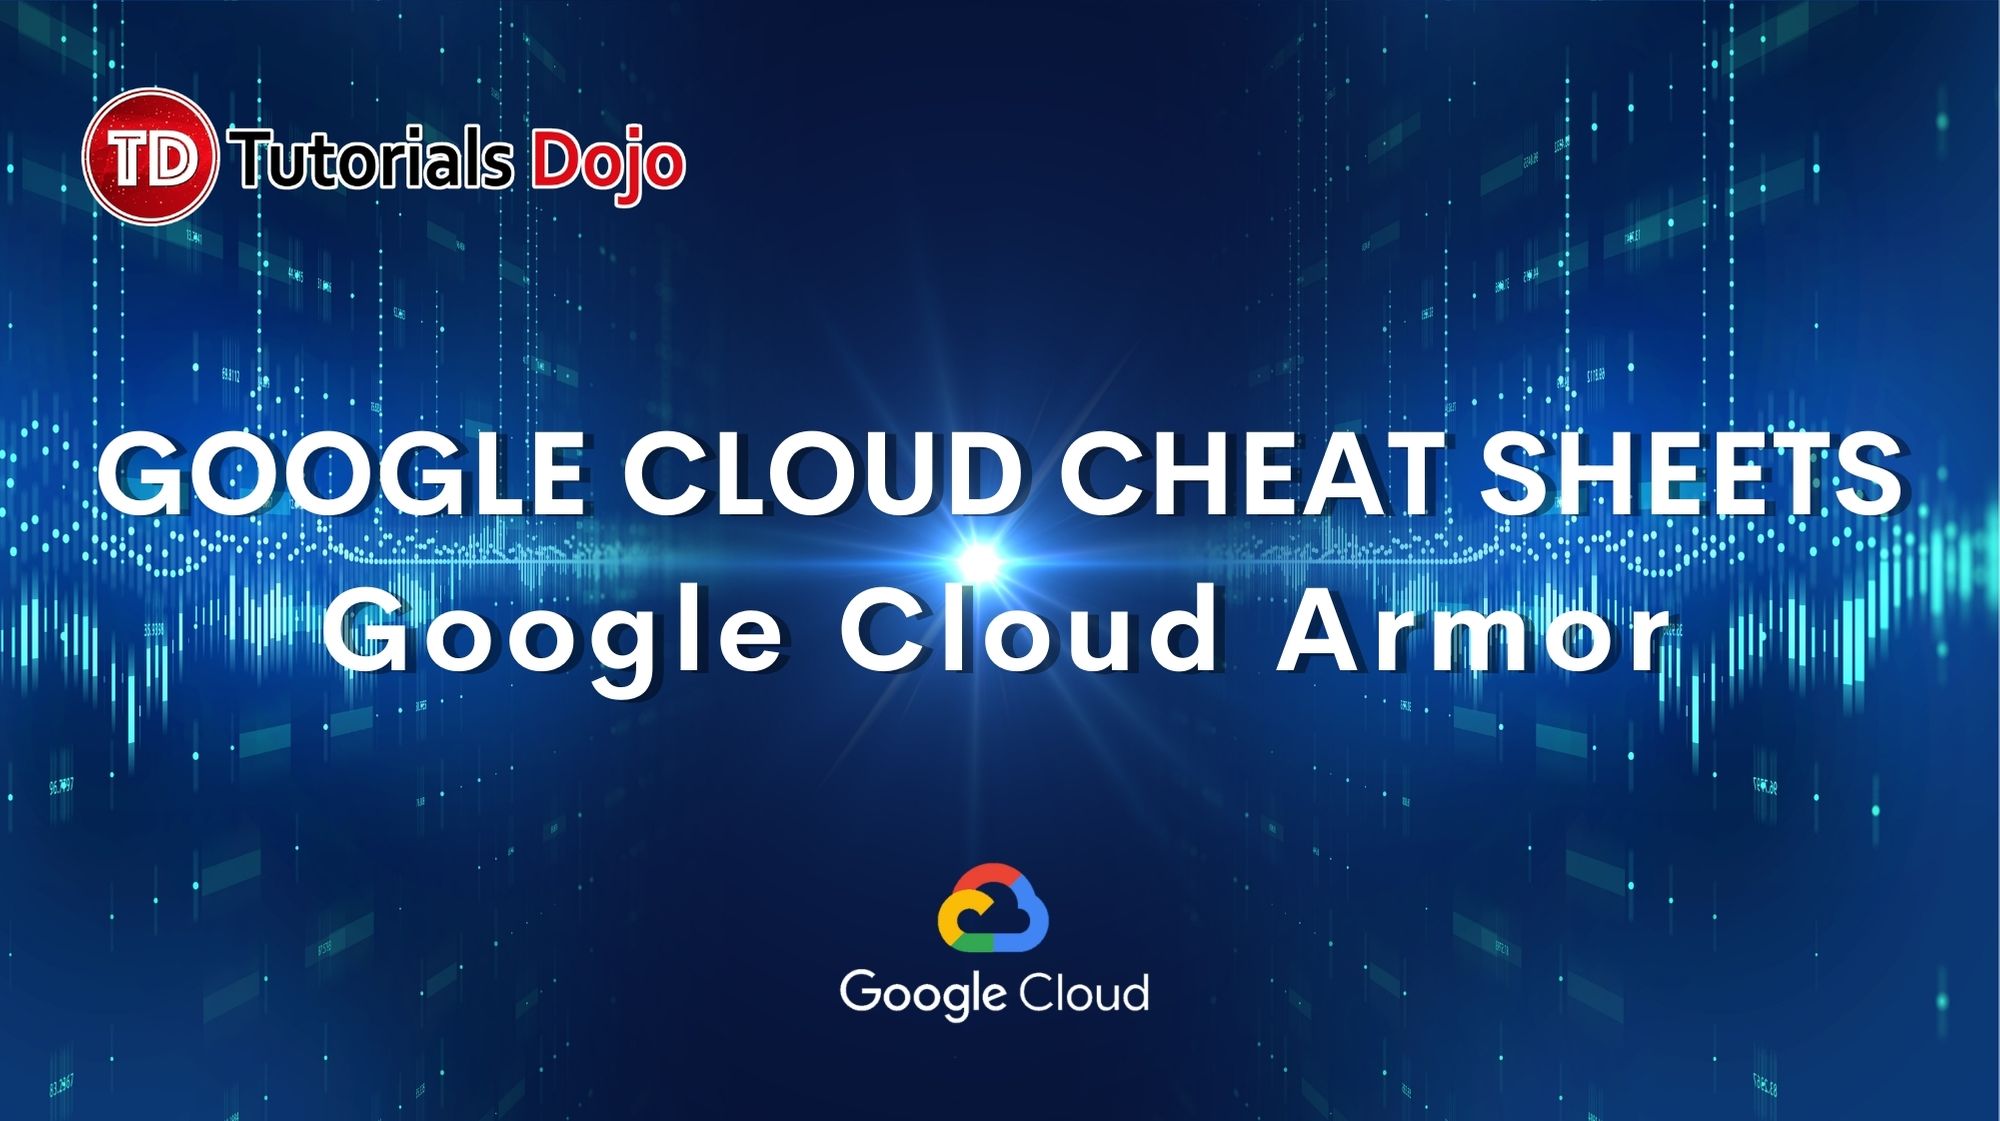 Google Cloud Armor